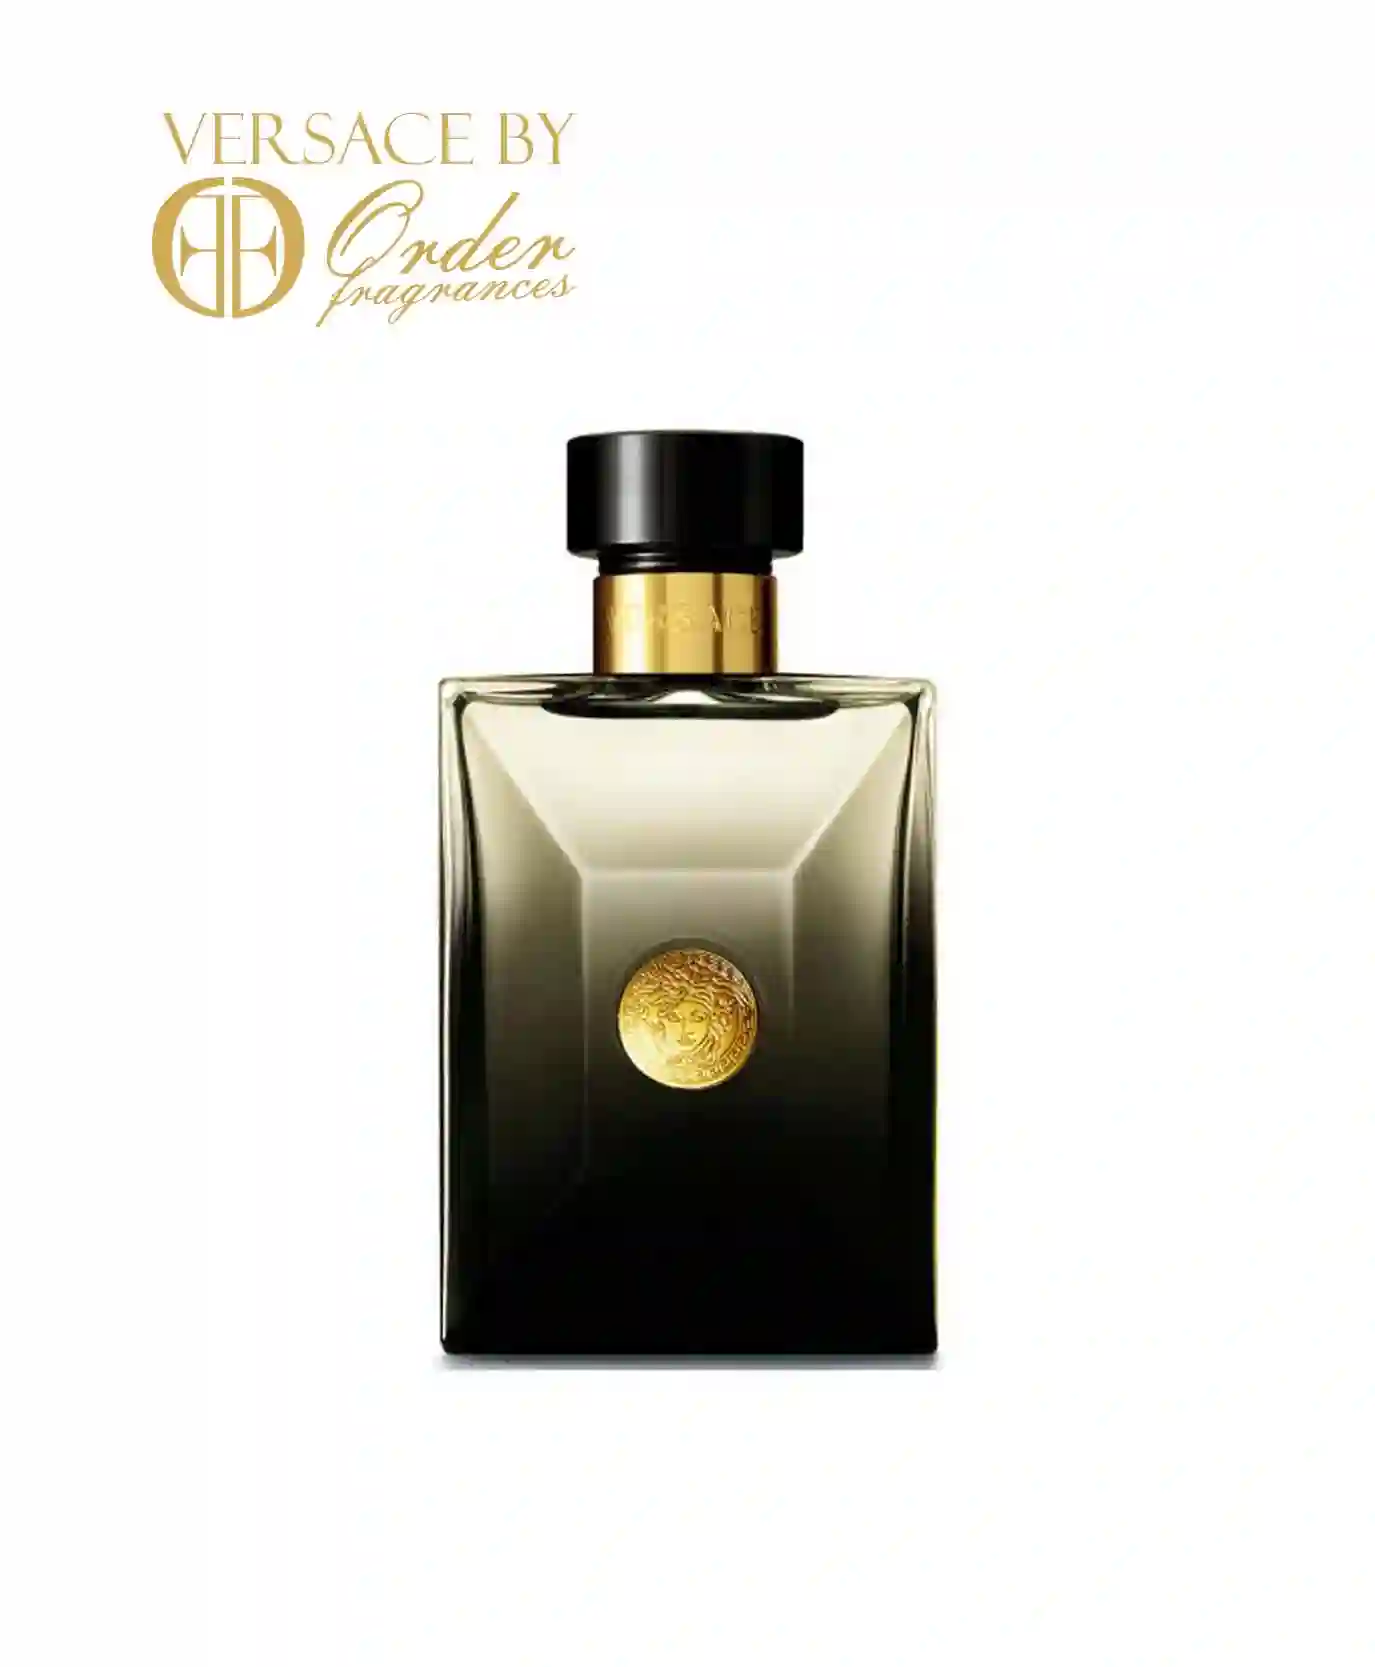 Versace Pour Homme Oud Noir 3.4 oz Eau de Parfum Spray